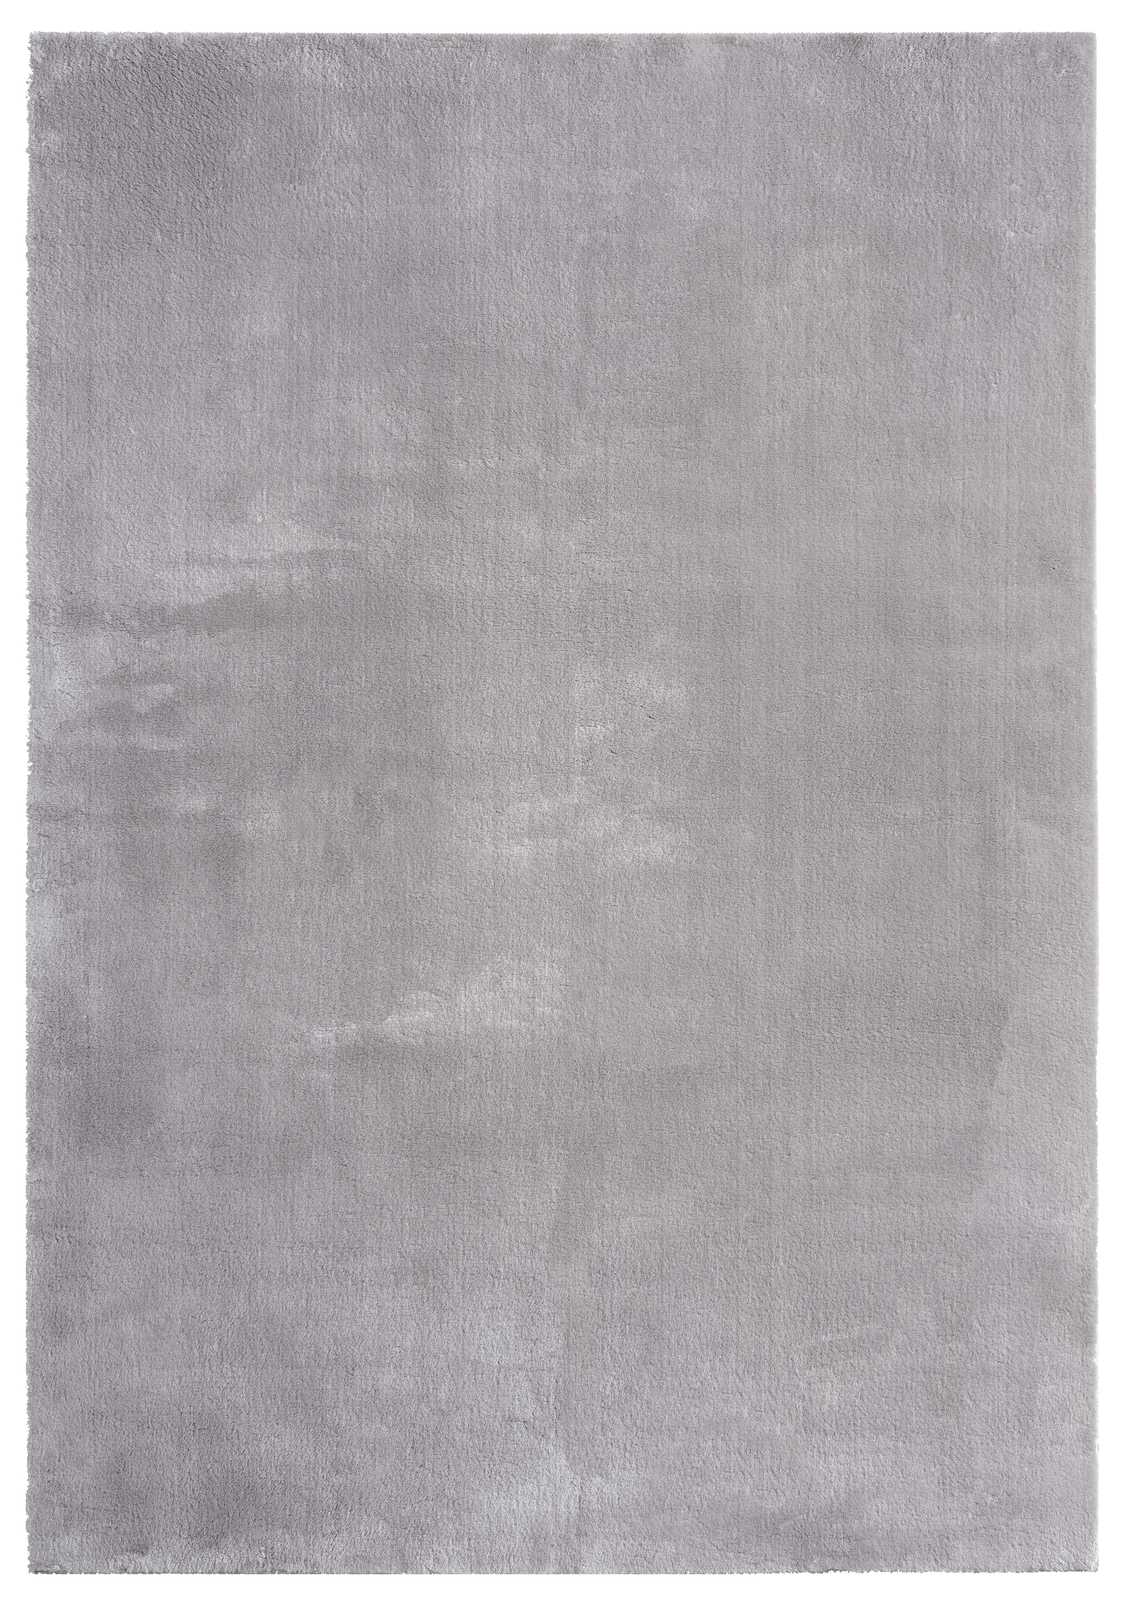             Fijn hoogpolig tapijt in grijs - 110 x 60 cm
        